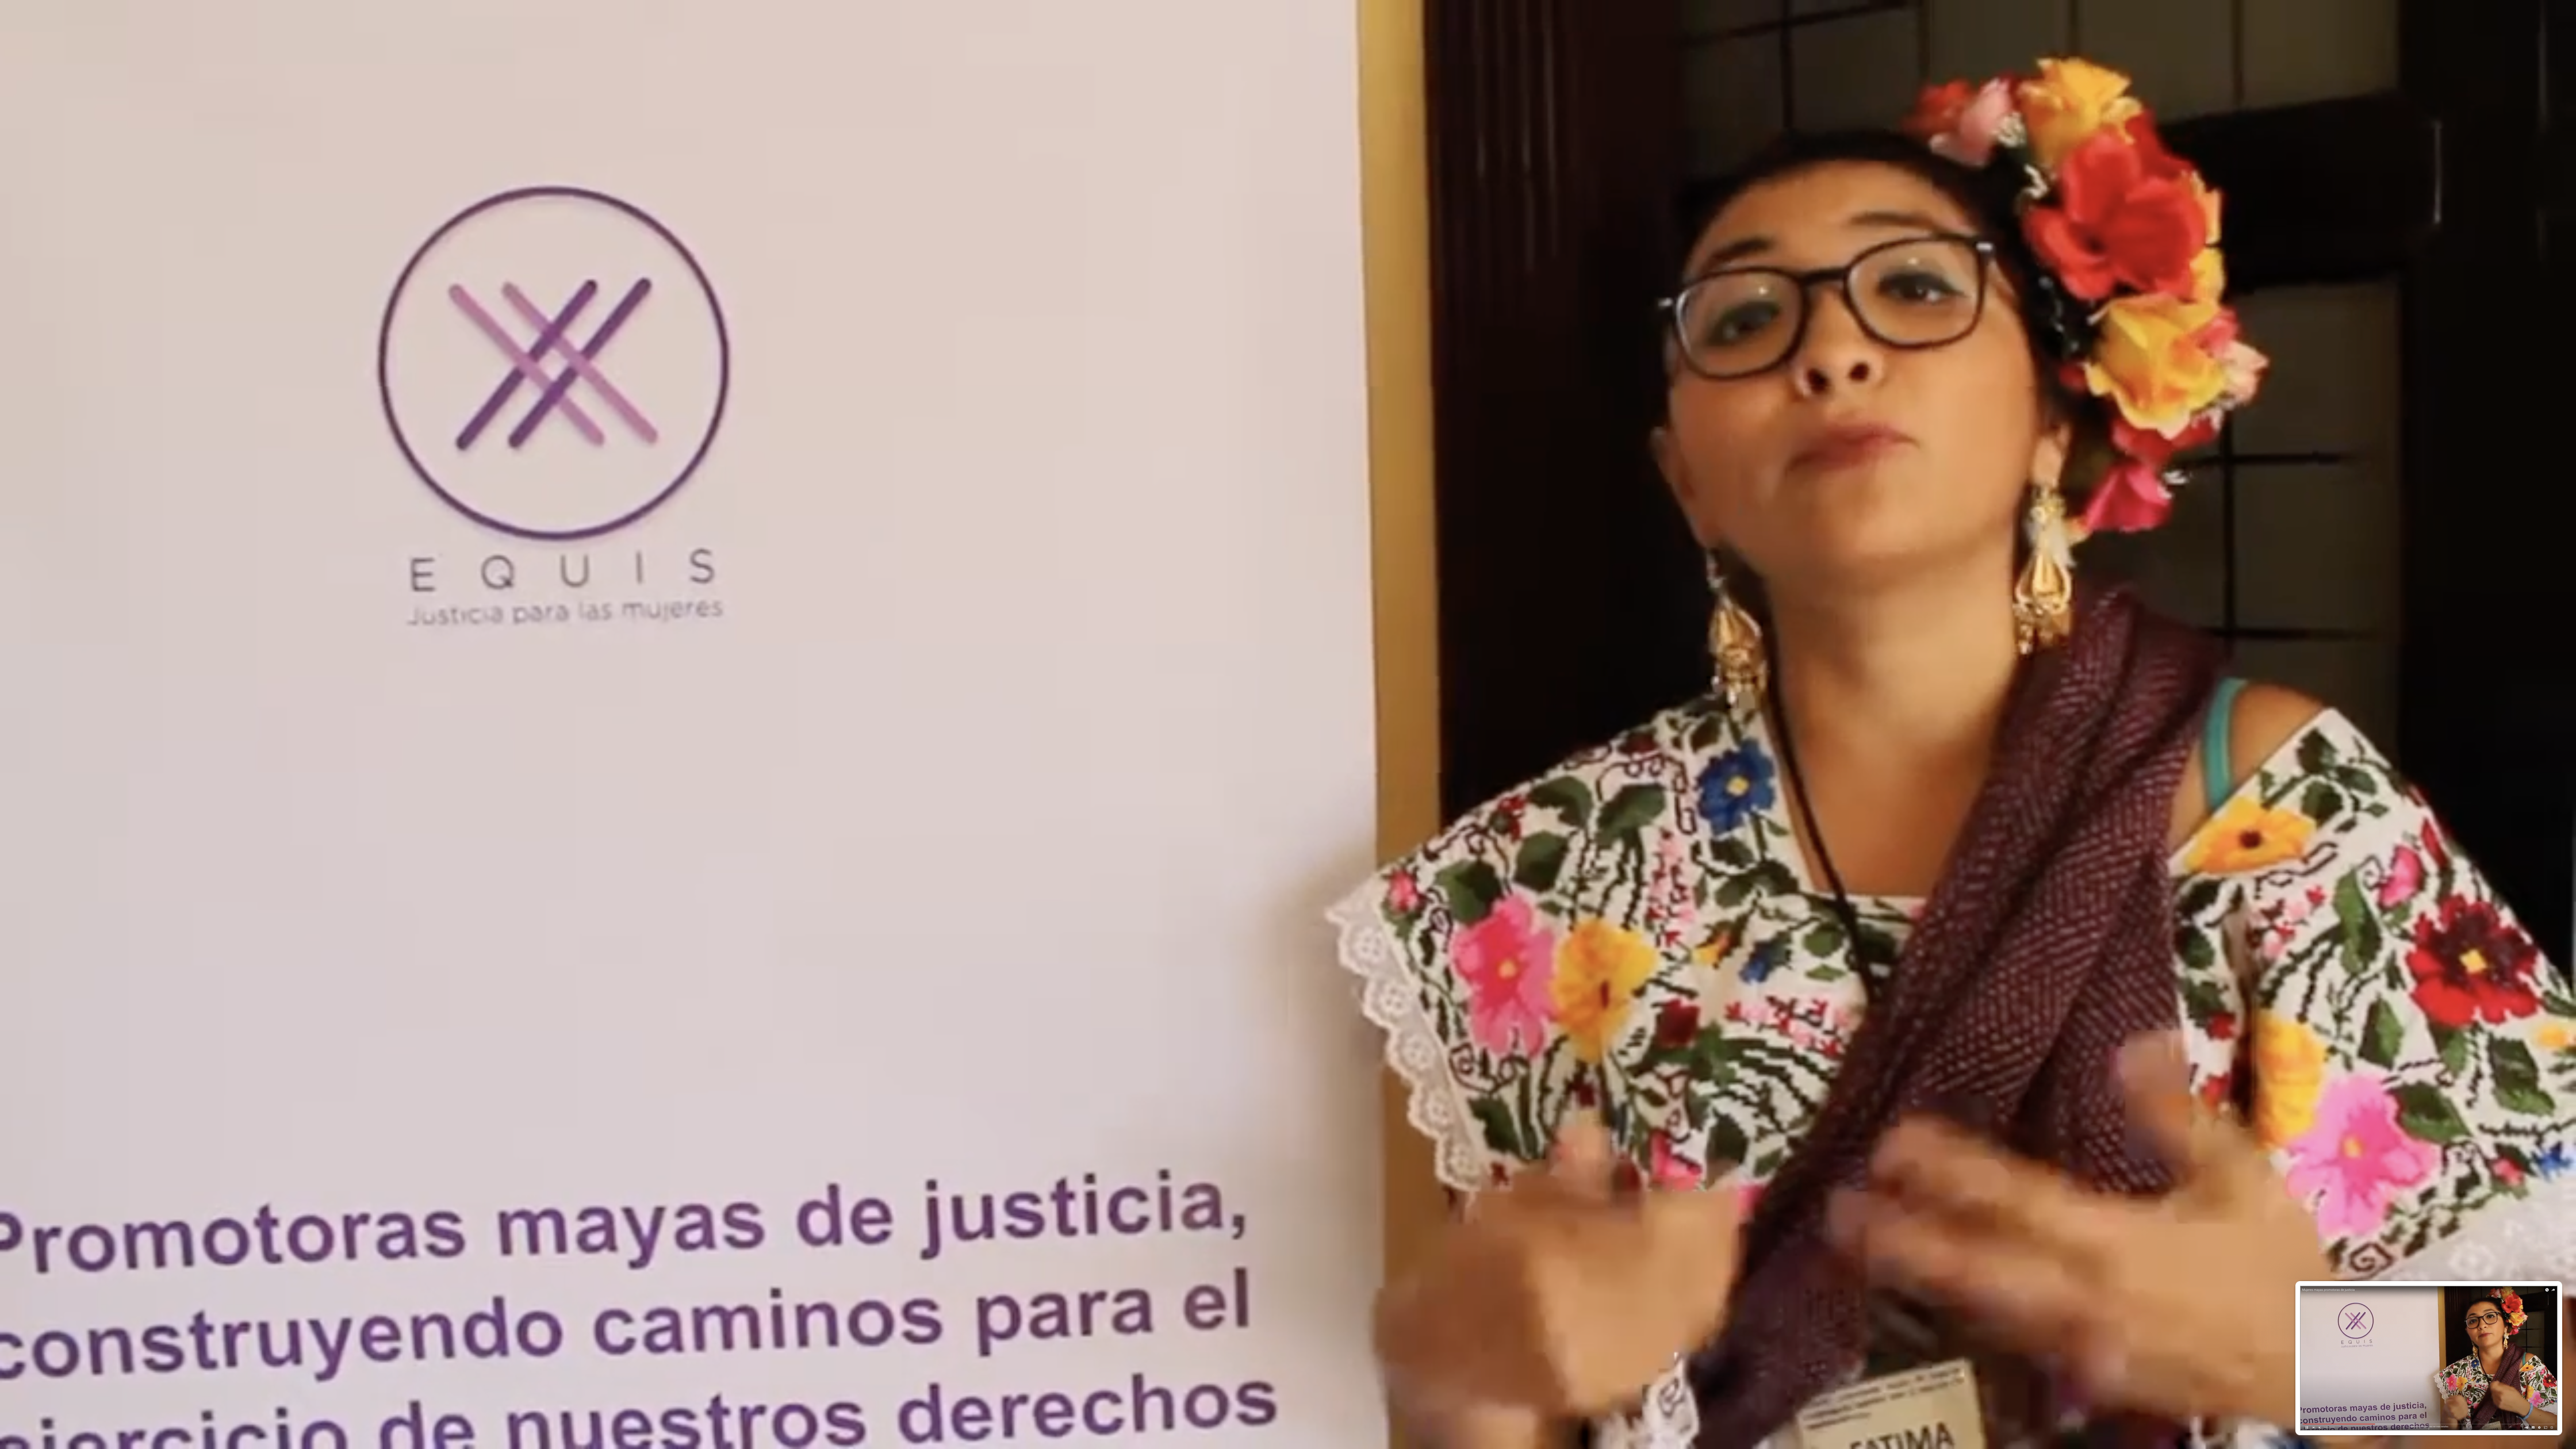 Mujeres mayas promotoras de justicia